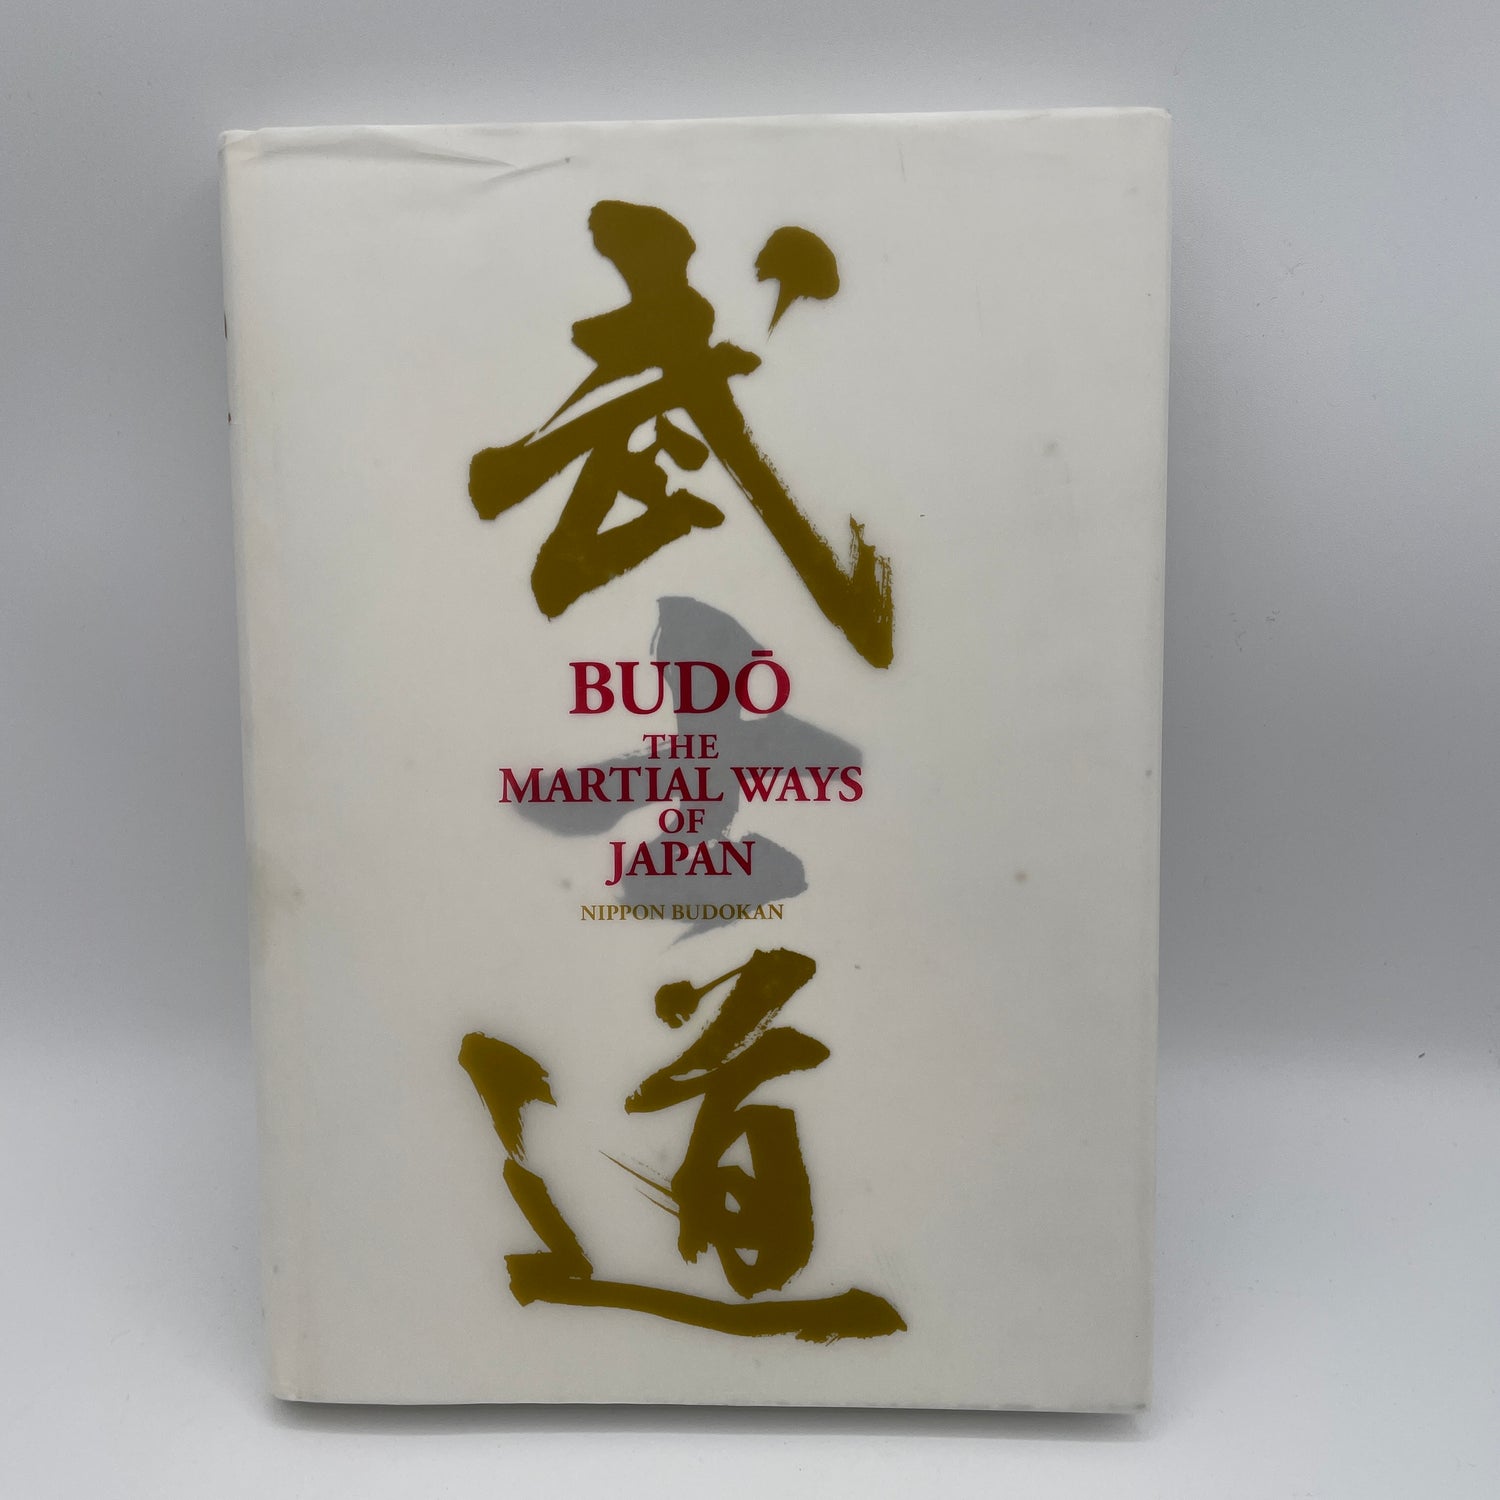 Budo: The Martial Ways of Japan Libro y DVD de Nippon Budokan (usado)